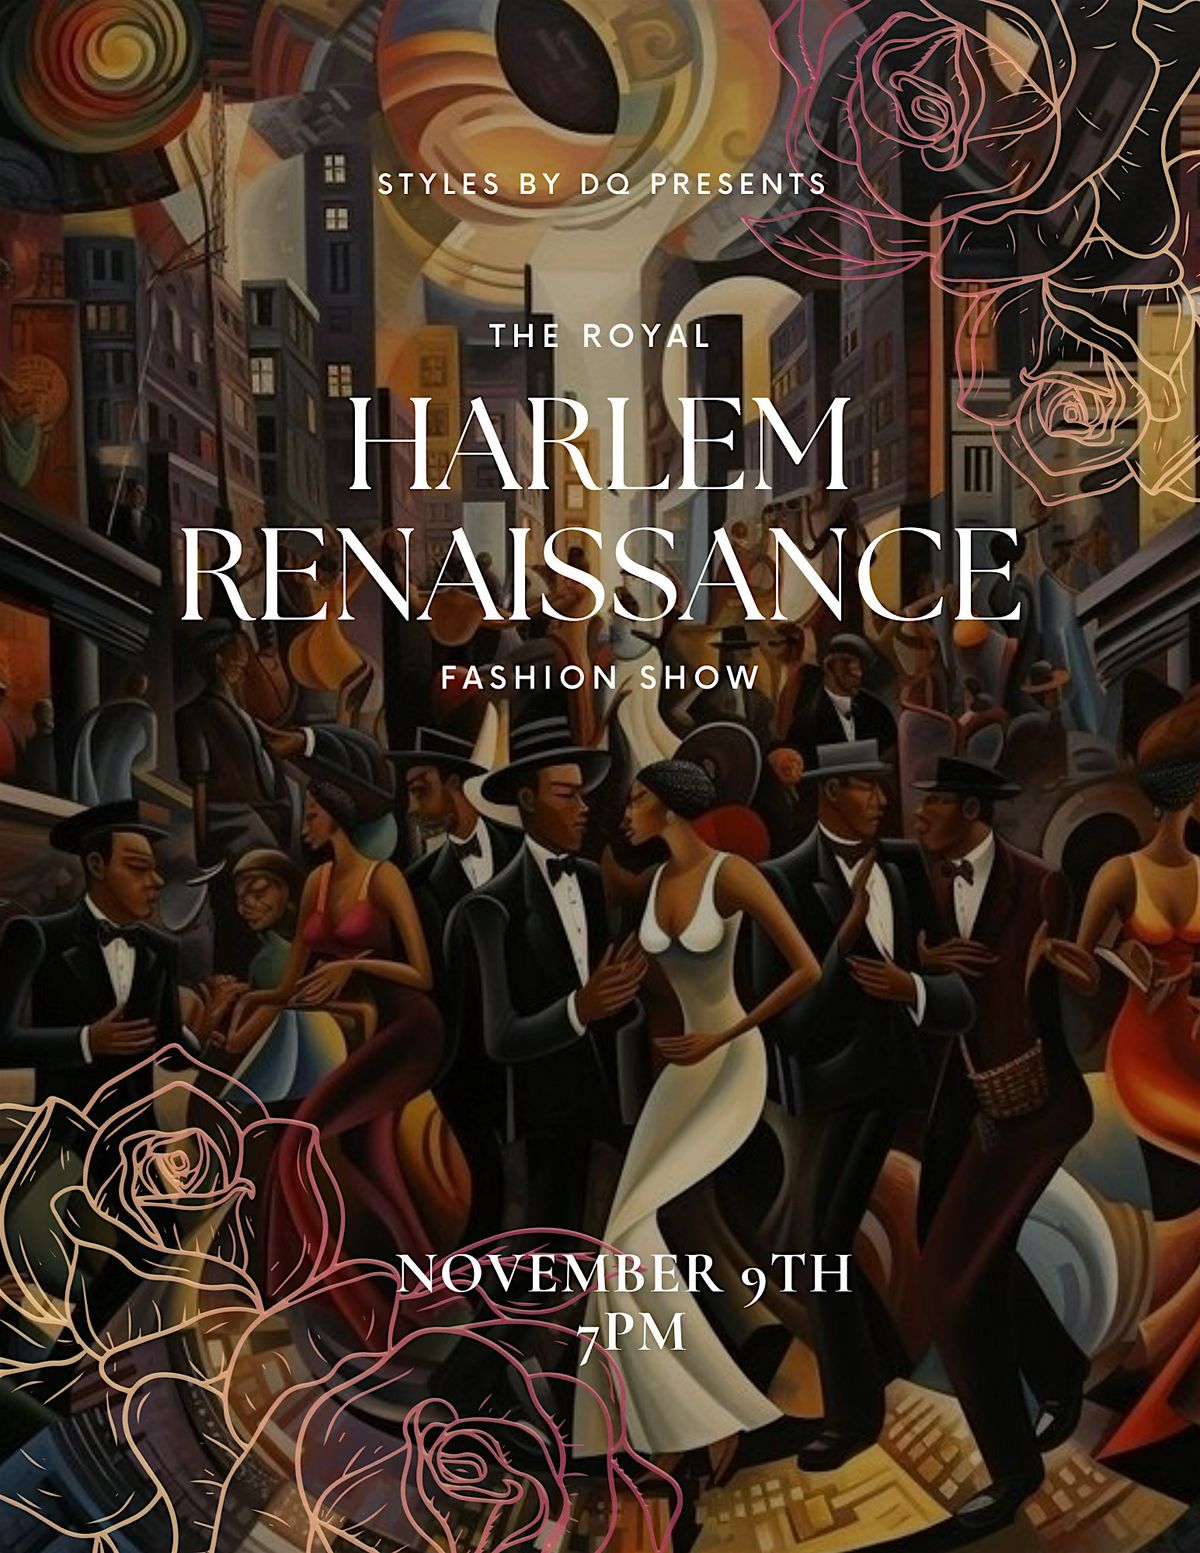 The Royal Harlem Renaissance Fashion Show